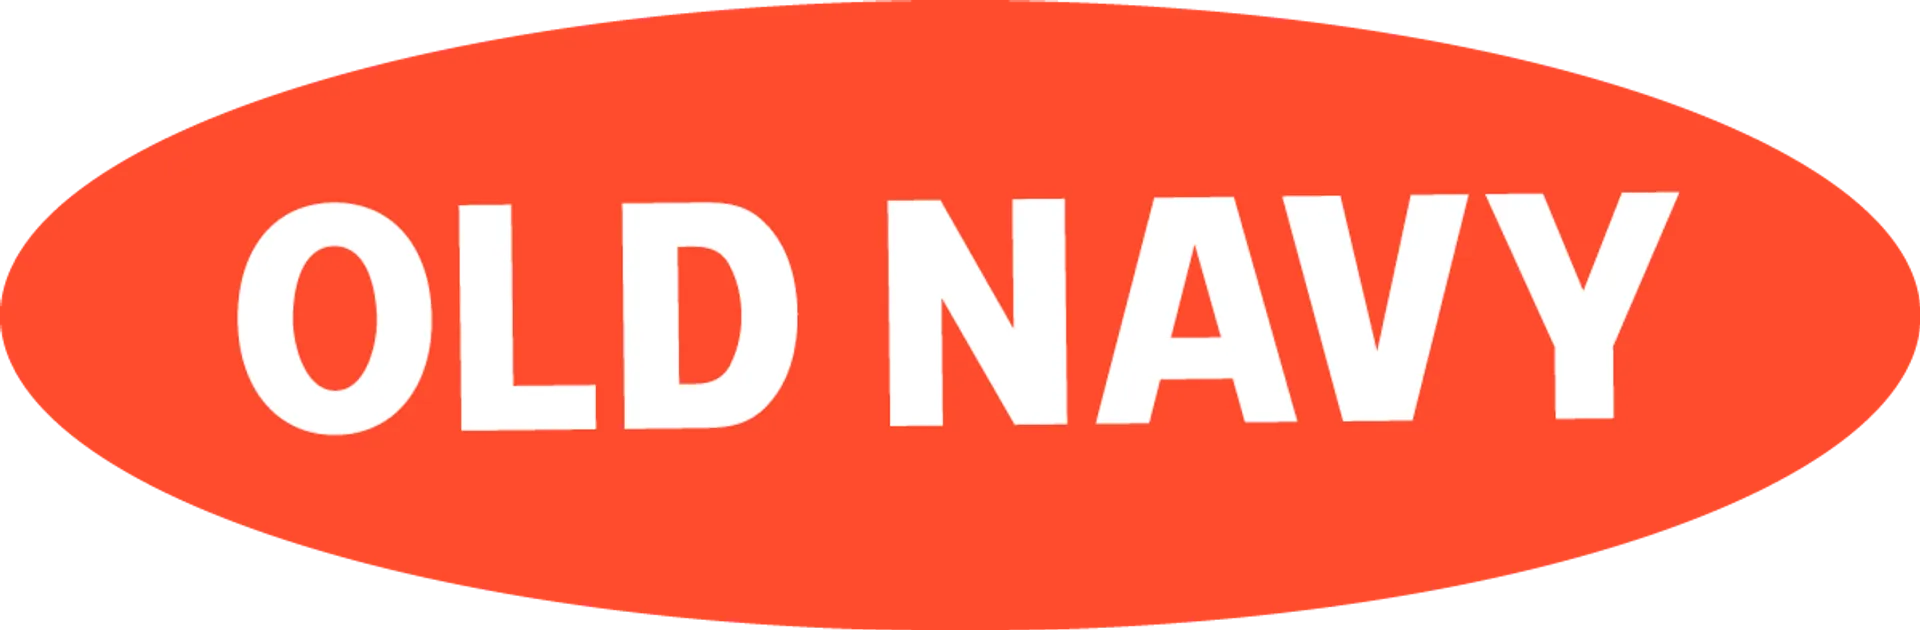 OLD NAVY logo de circulaire